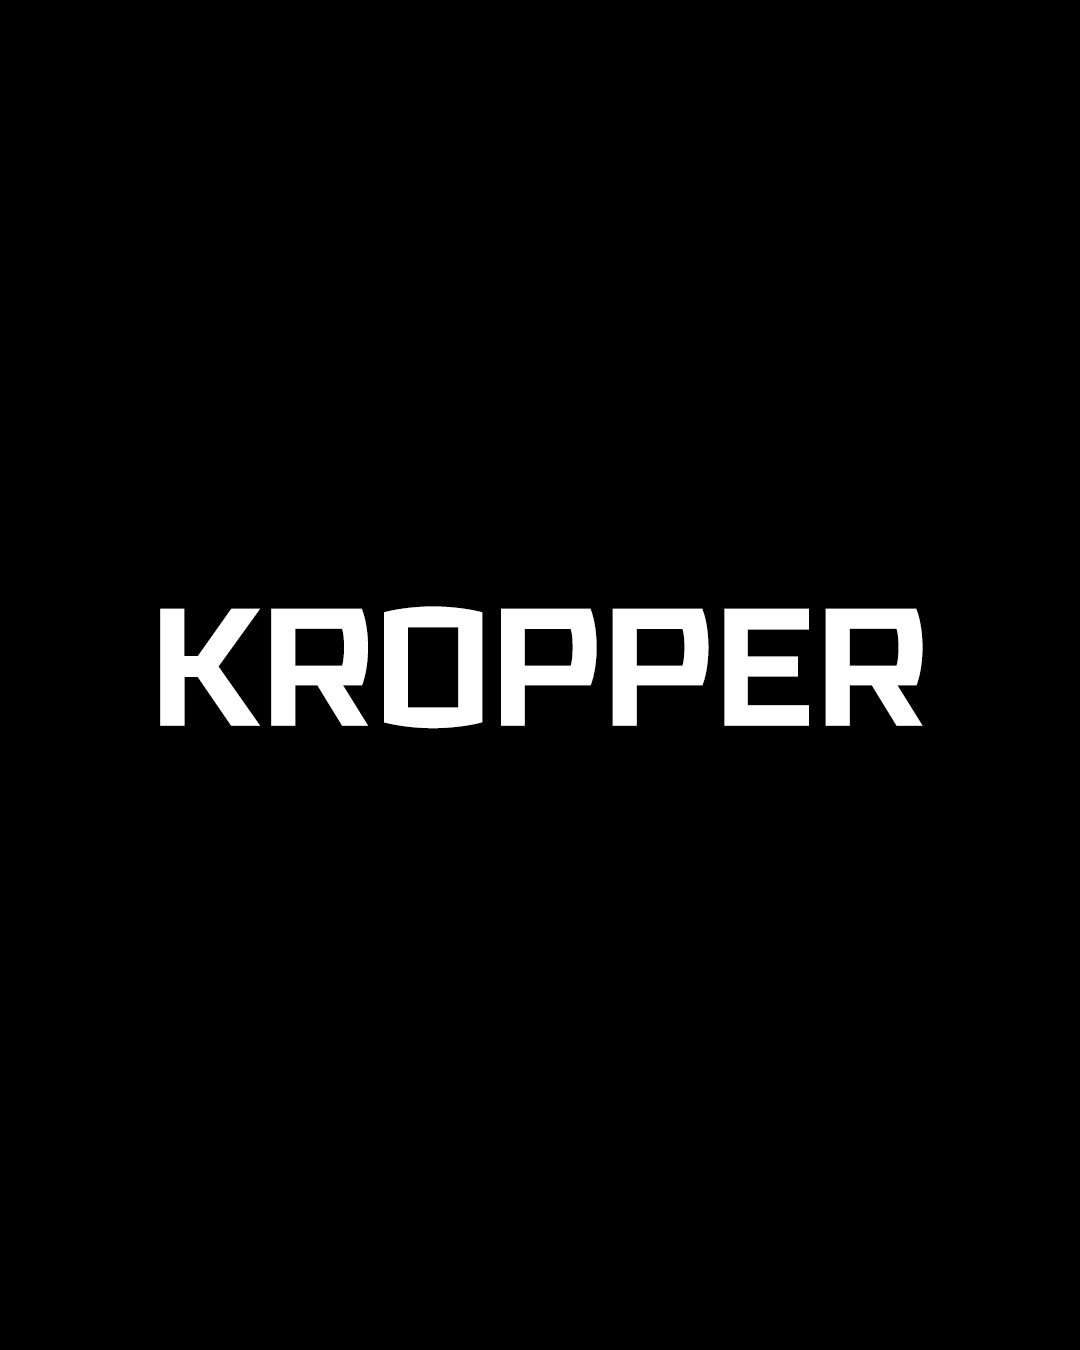 KROPPER